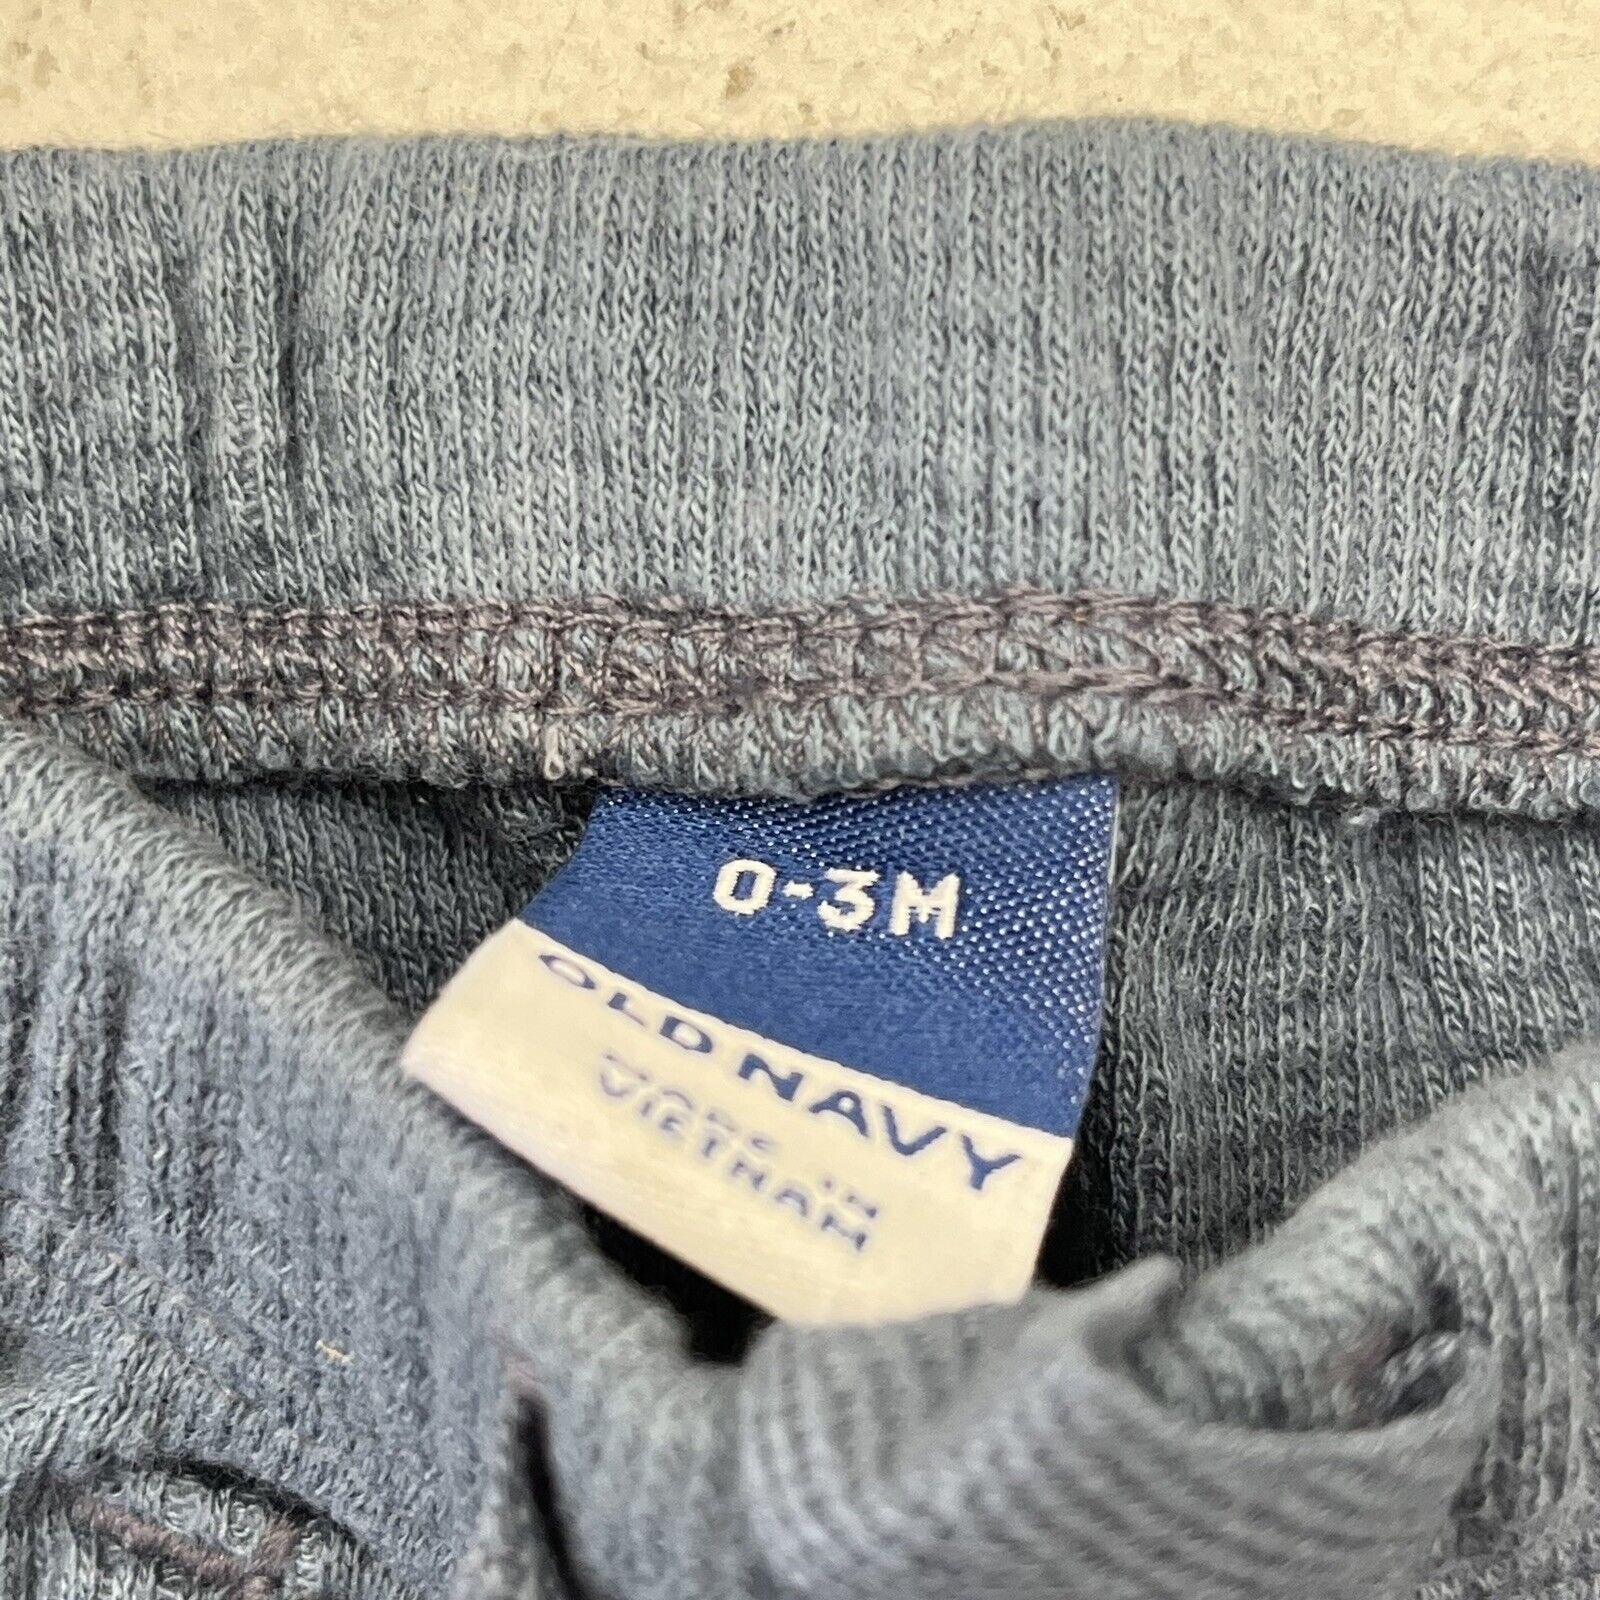 Old Navy Blue 1994 Thermal-Knit Logo Bodysuit & Leggings Unisex Size 0 -  beyond exchange